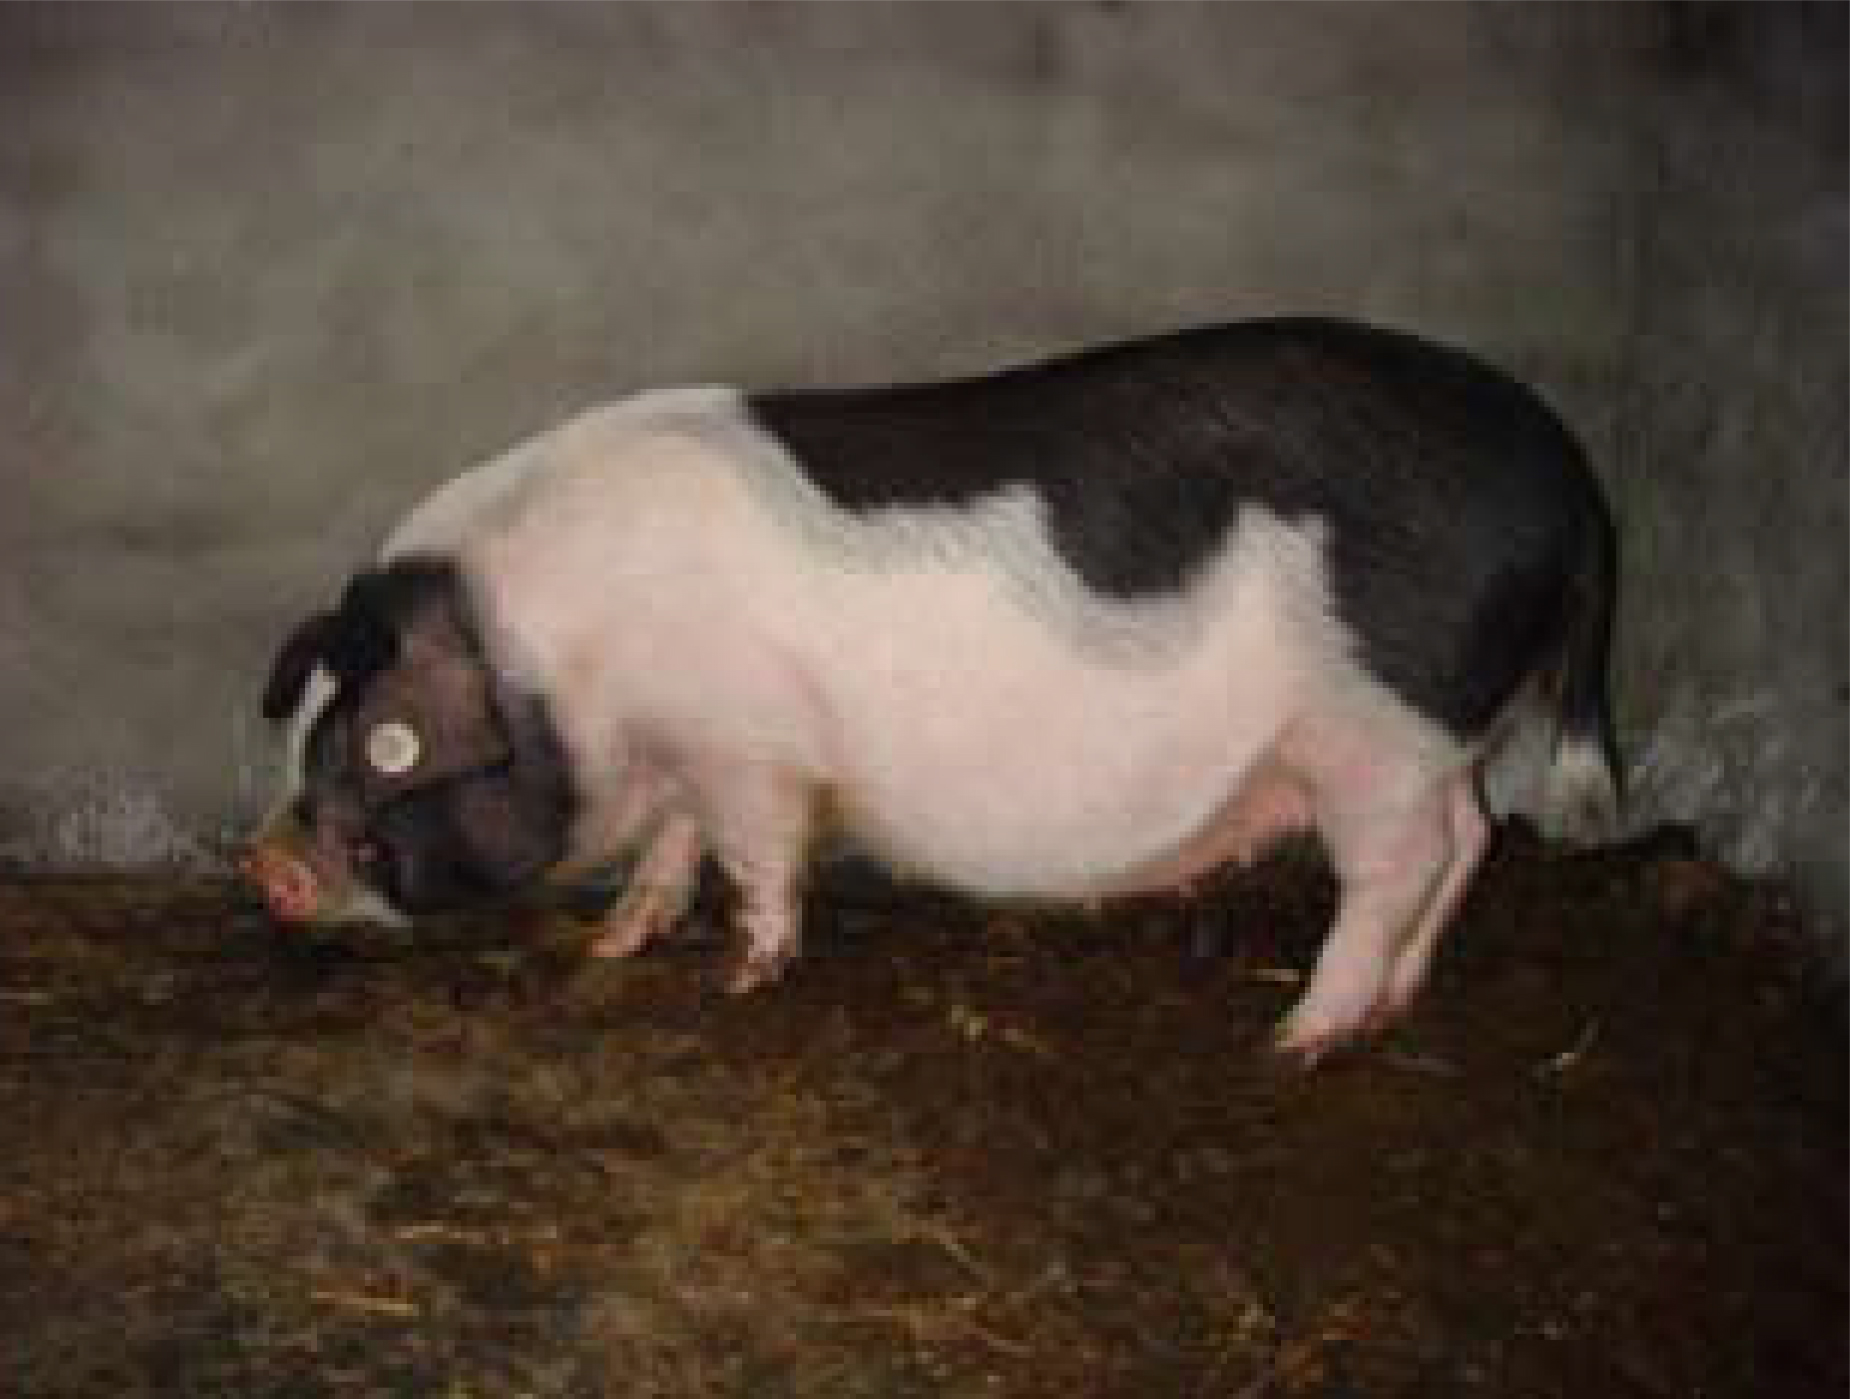 纯种太湖猪特点太湖猪原种猪场图片梅山猪育种中心二花脸母猪养殖场 - 阿里巴巴商友圈